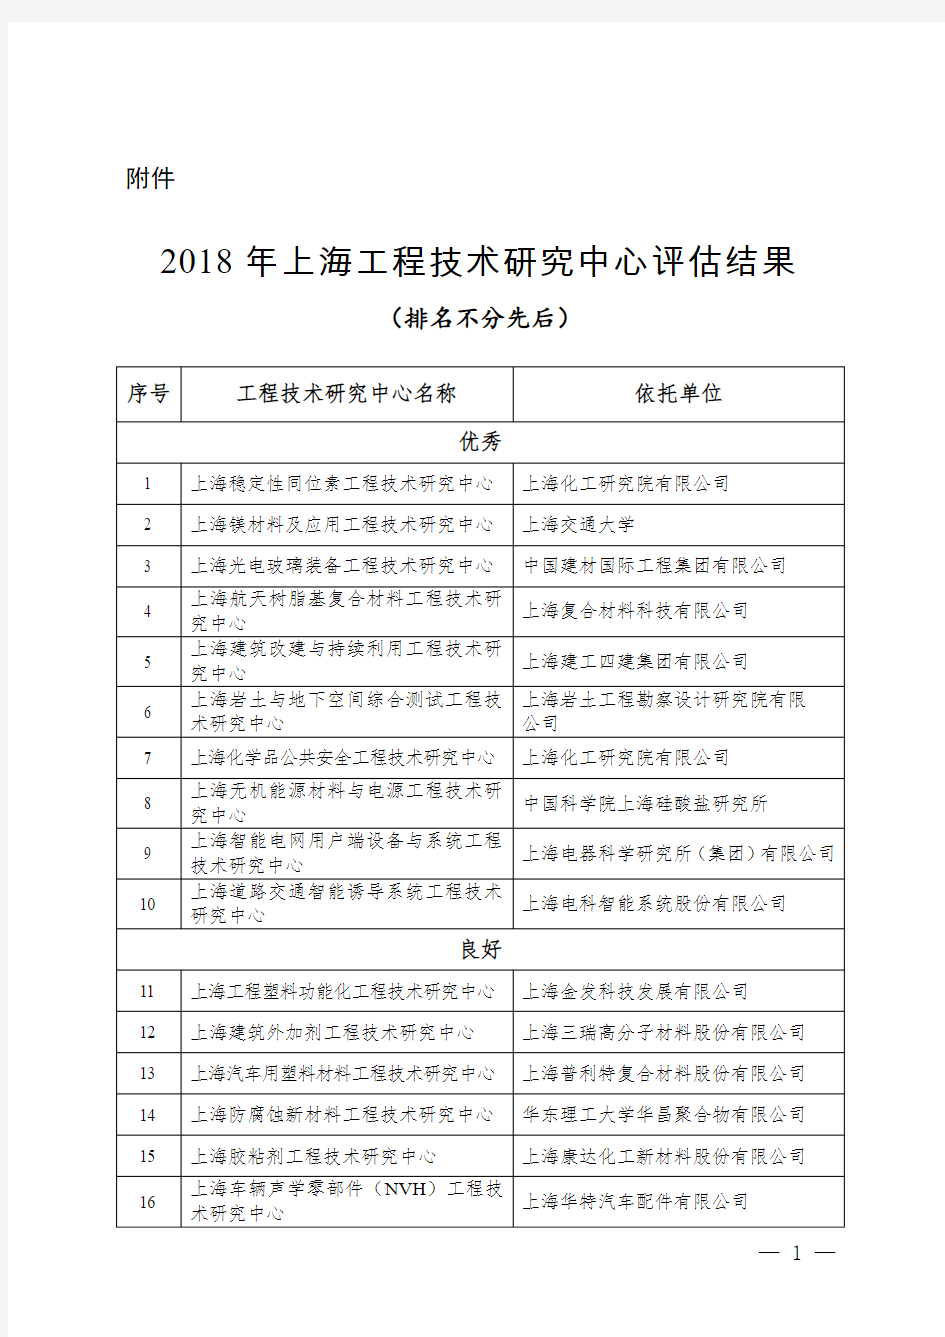 2018 年上海工程技术研究中心评估结果